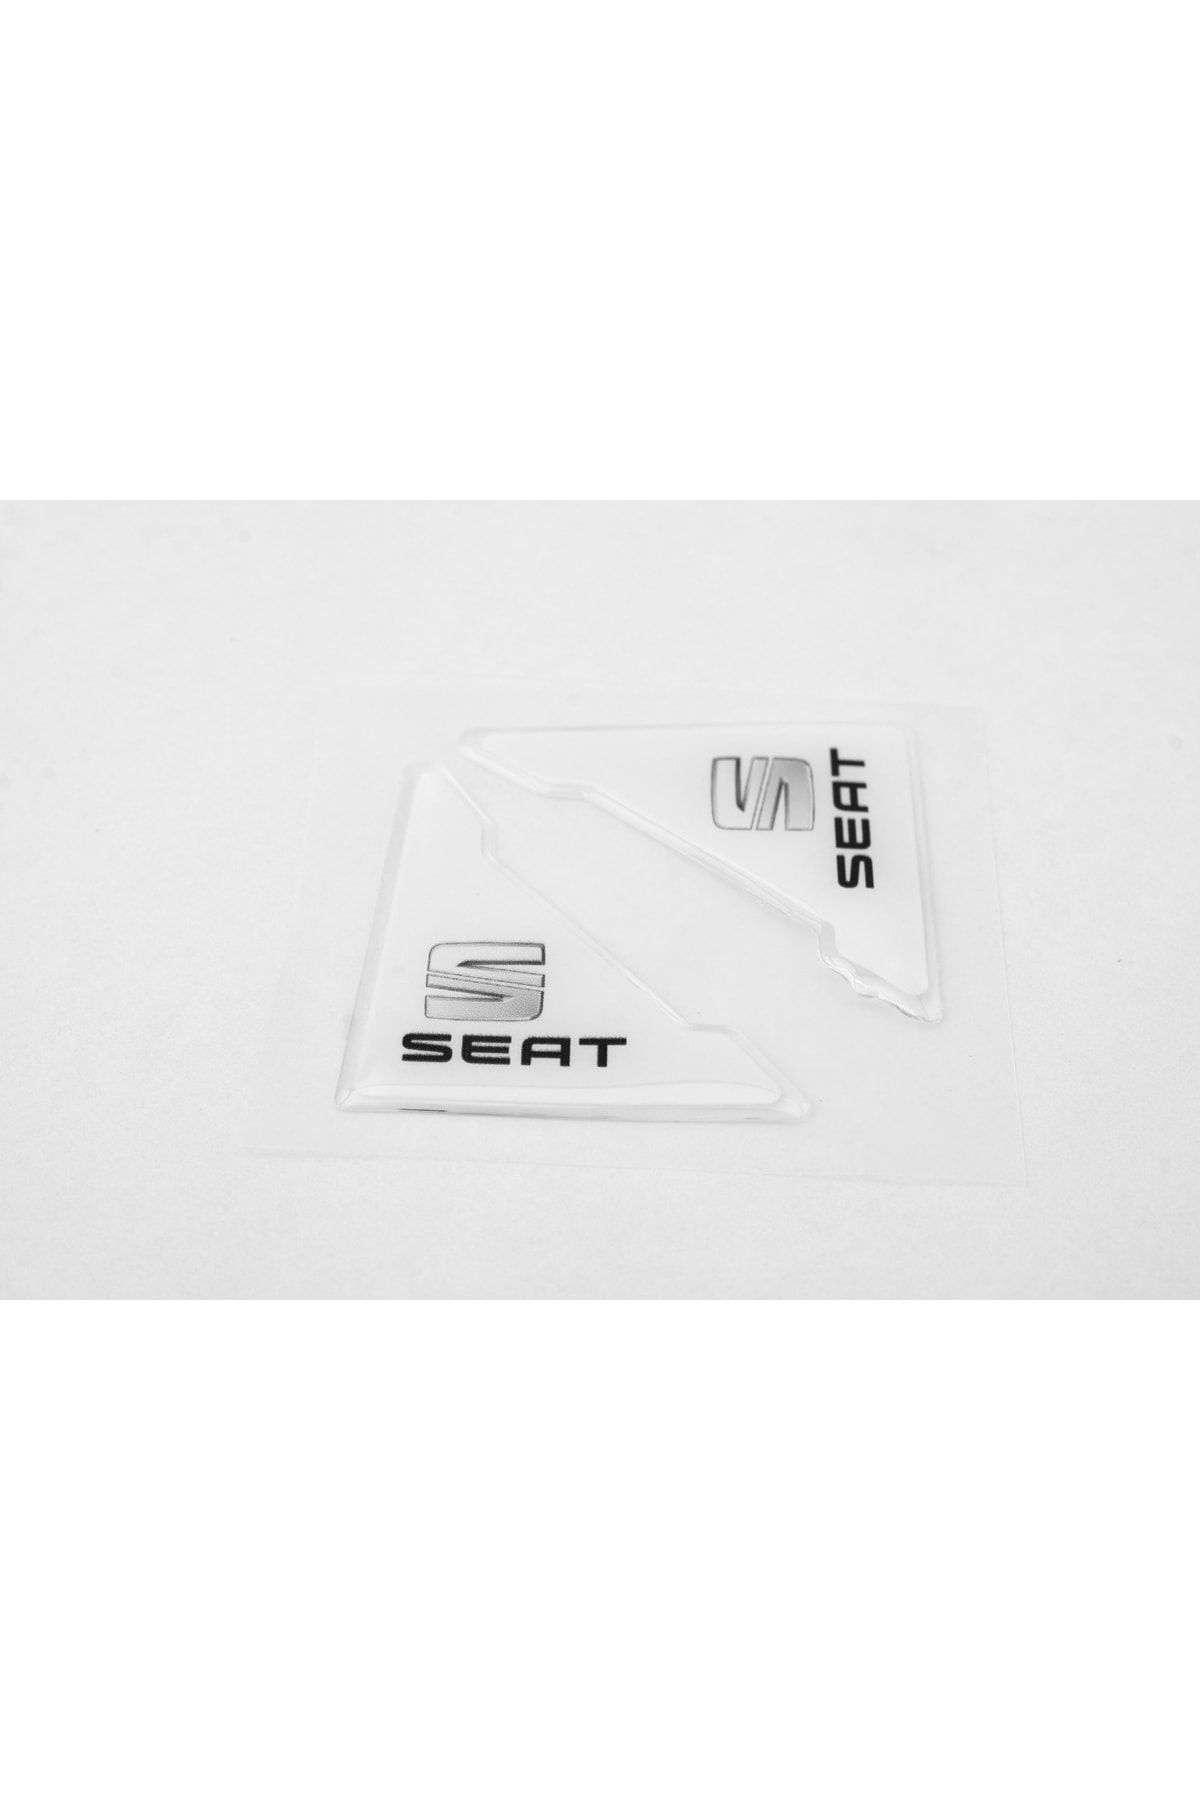 Flow Seat Özel Logolu Otomobil Kapı Çizik Darbe Koruma Silikon Beyaz Uyumlu